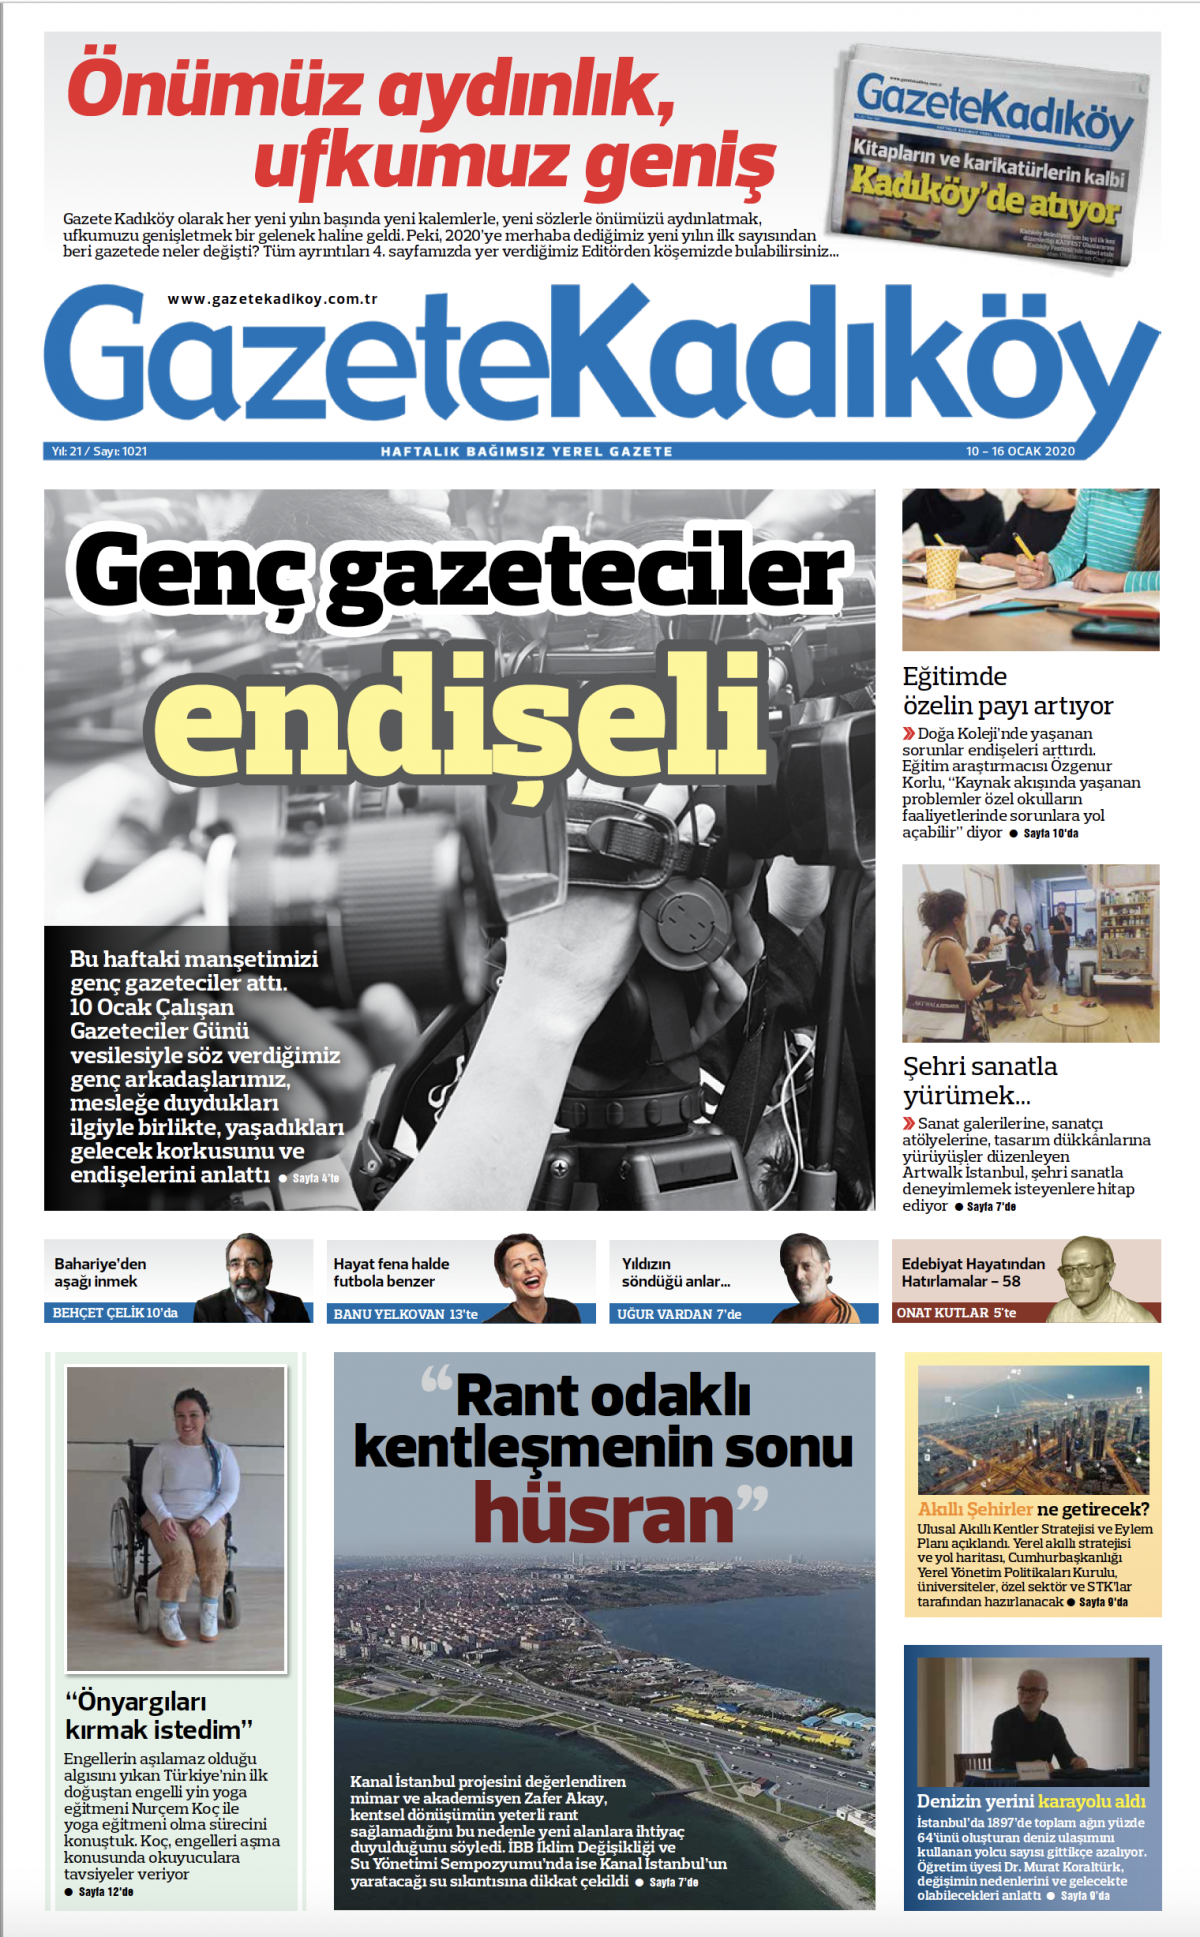 Gazete Kadıköy - 1021. Sayı